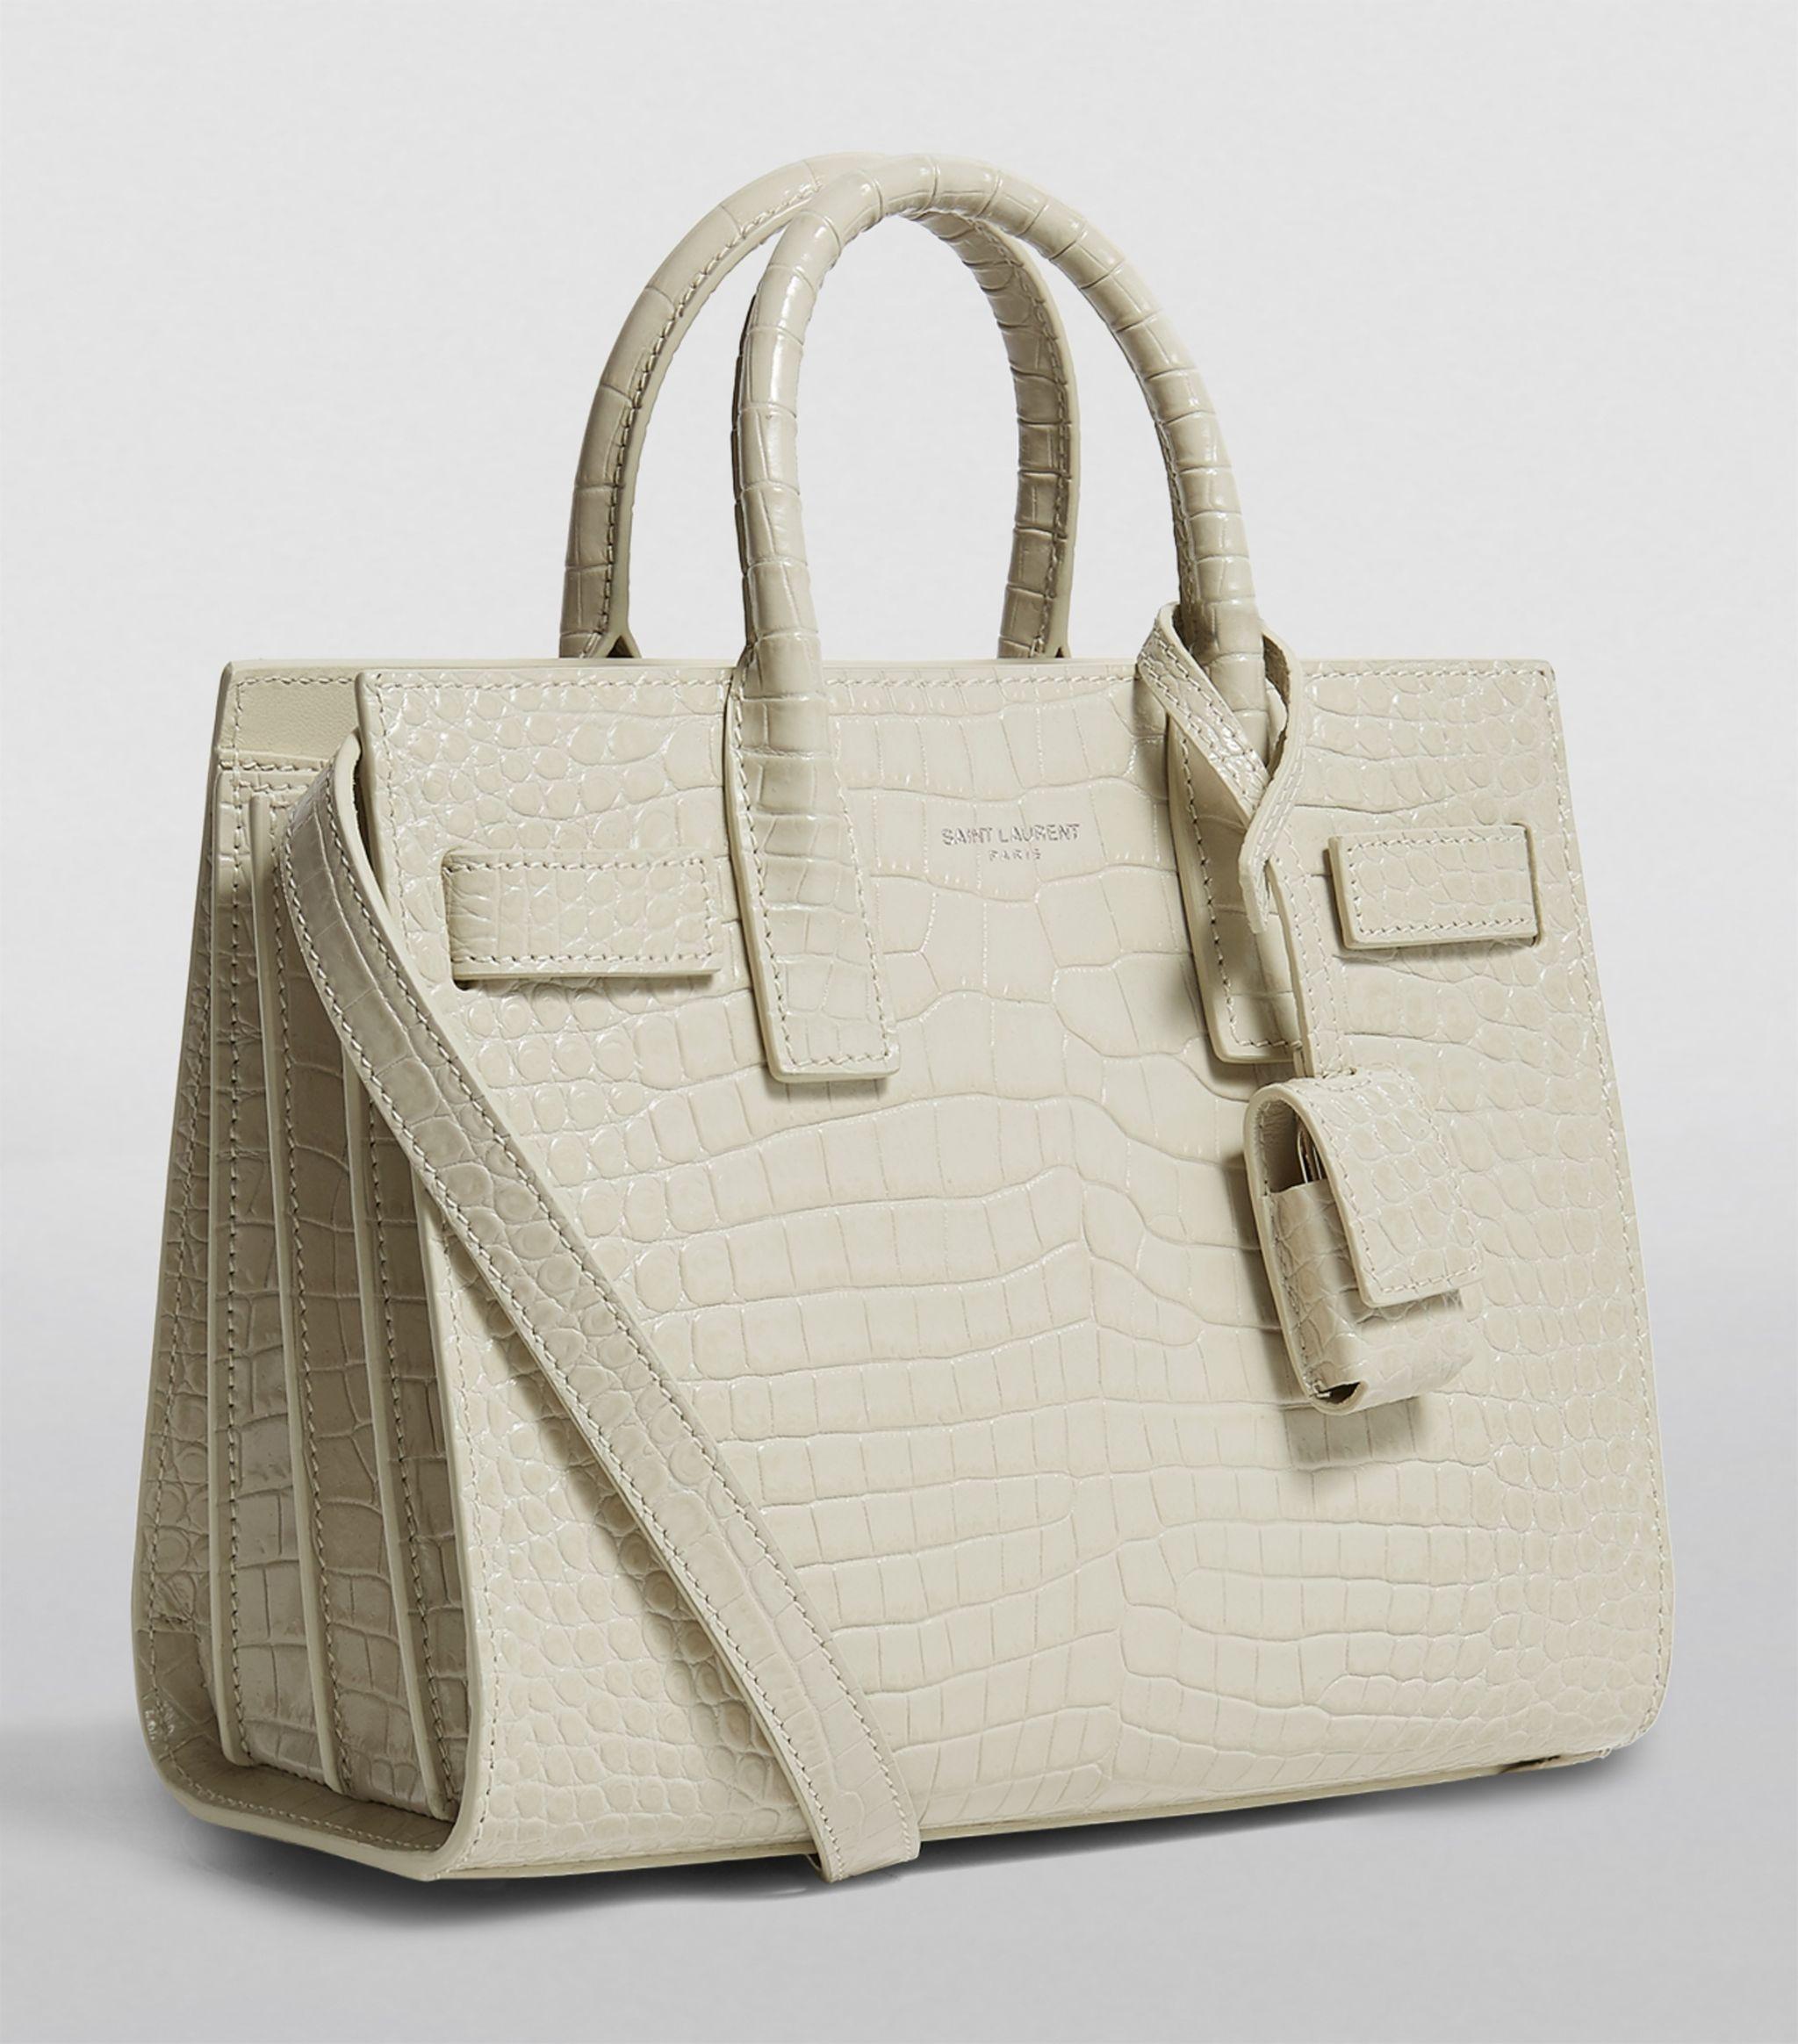 Saint Laurent nano Sac De Jour crocodile-effect tote bag - ShopStyle